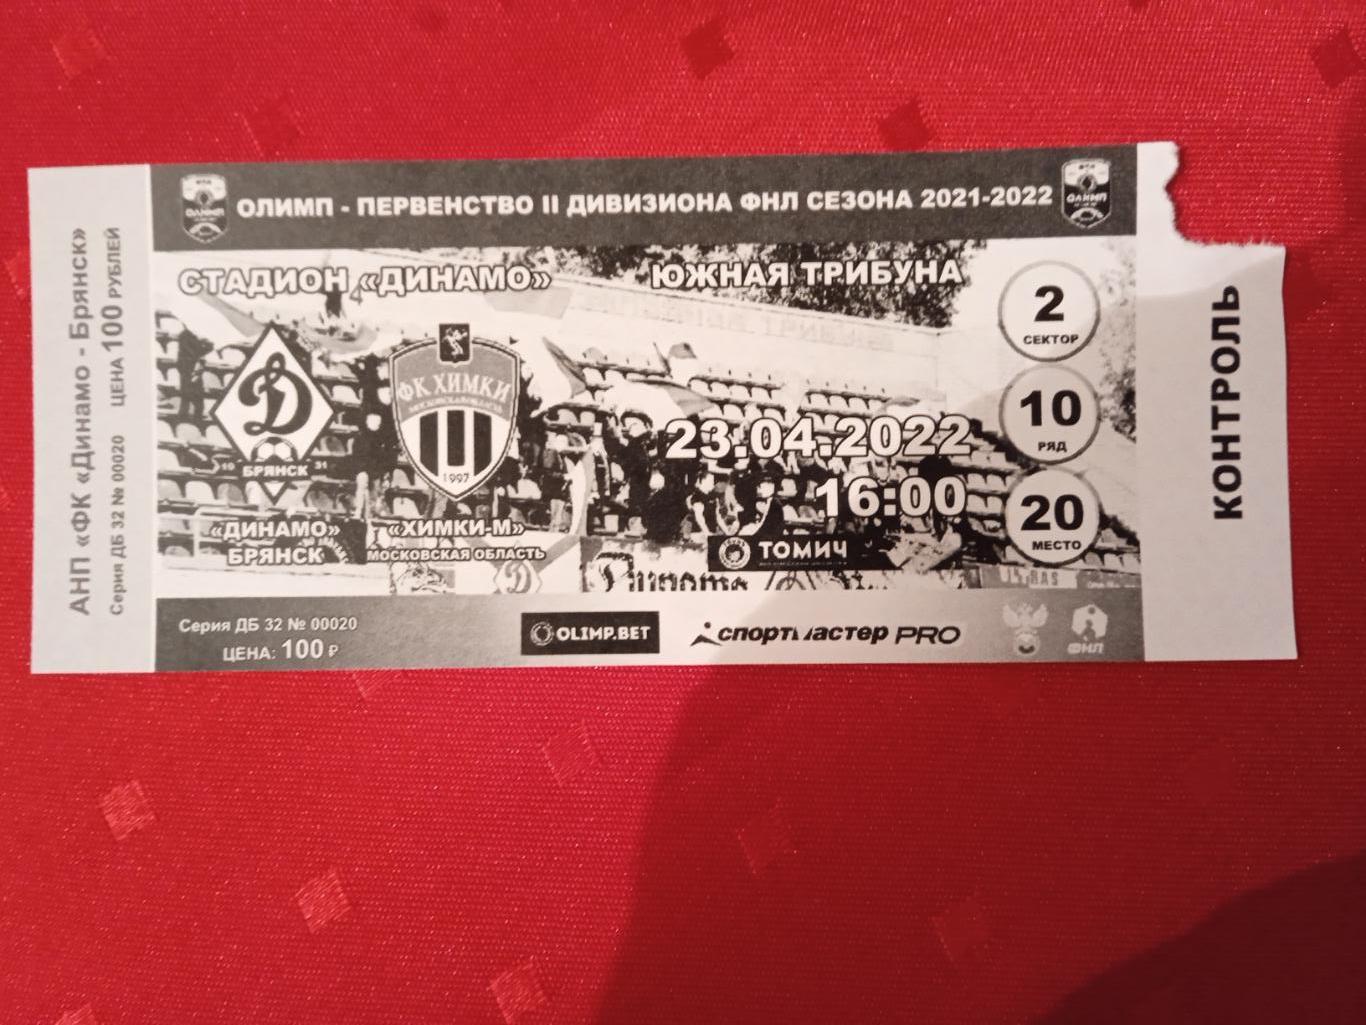 Билет на матч Динамо Брянск - Химки-М 23.04.2022.